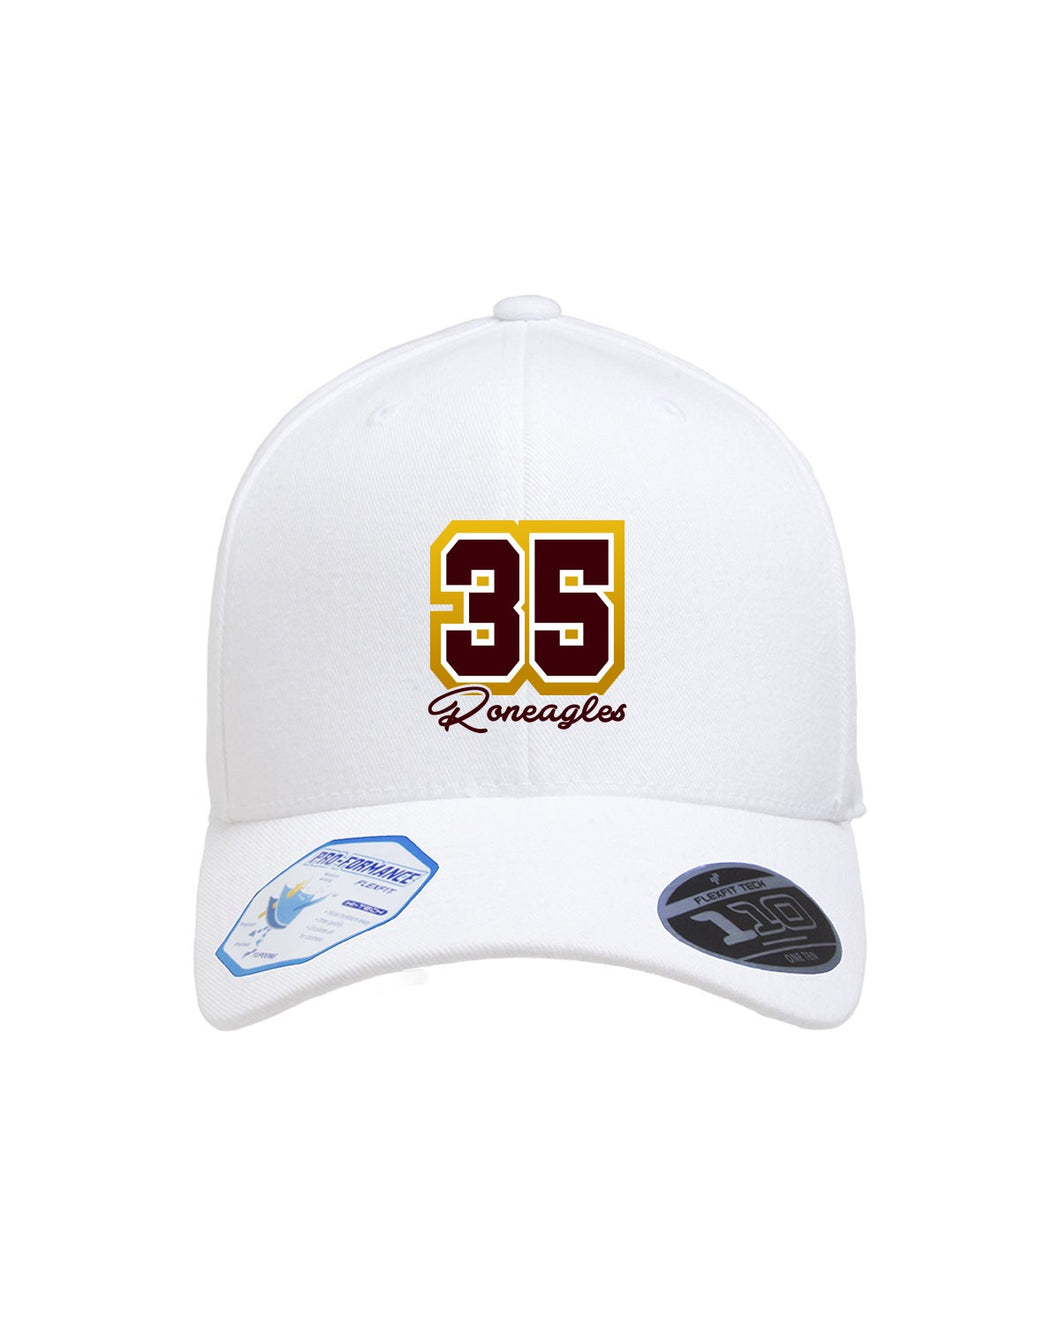 6277R – McDonogh 35 Custom Logo Hat Fitted Cap